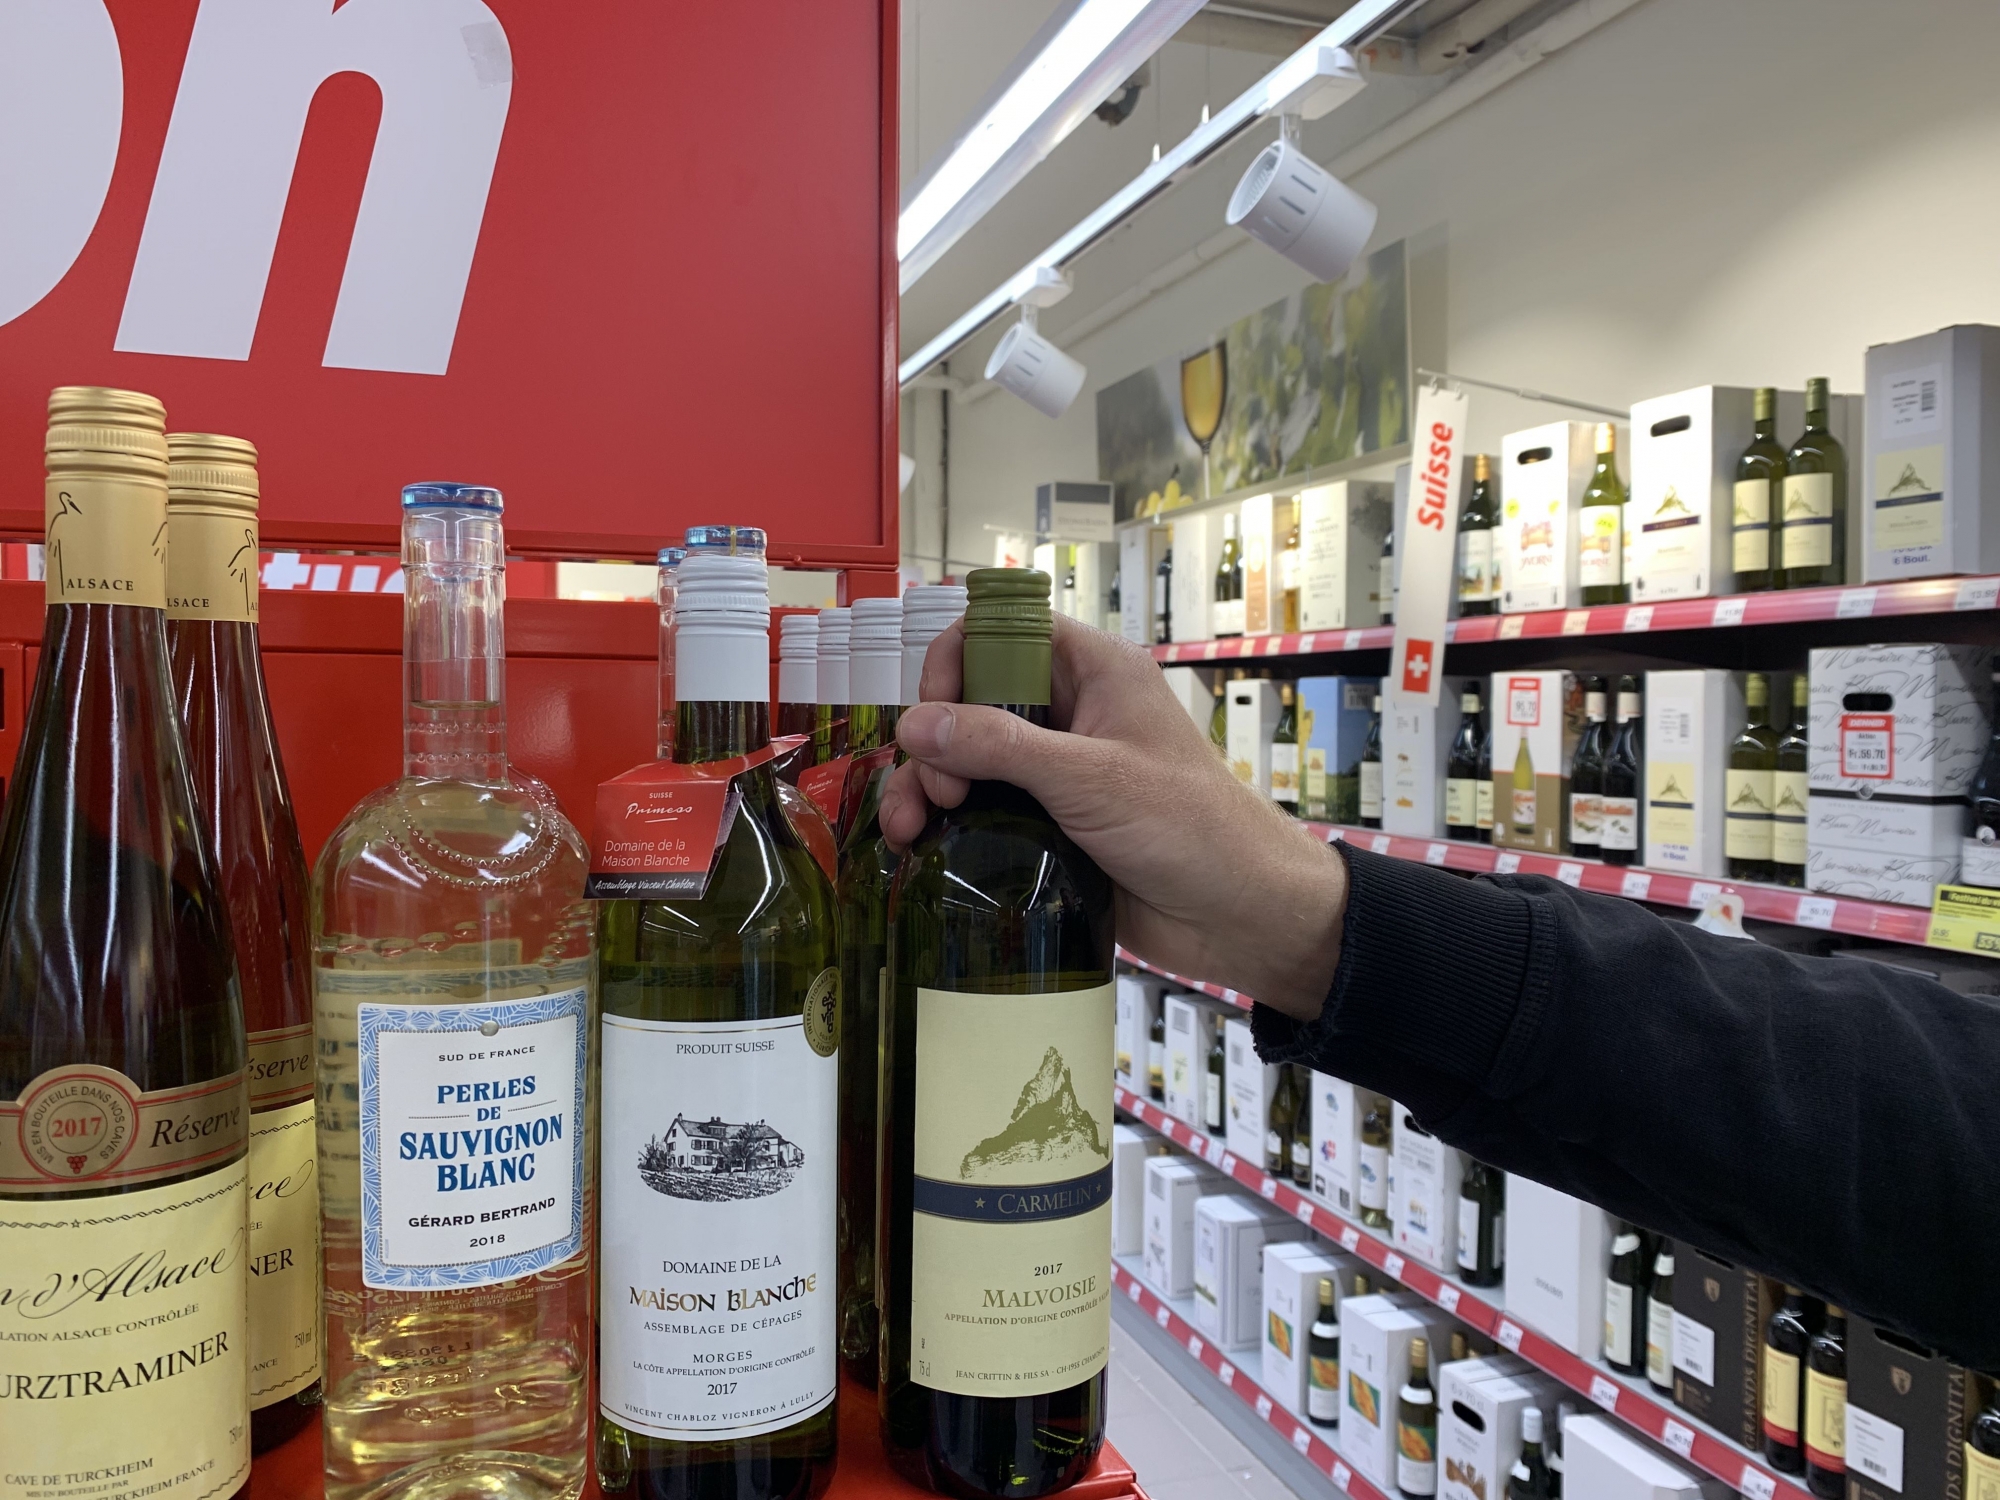 Le chiffre d'affaires par région viticole est en baisse partout par rapport à 2017, sauf dans le canton de Vaud qui a grignoté une part de marché des vins valaisans, pénalisés par une faible production liée au gel et aux intempéries.